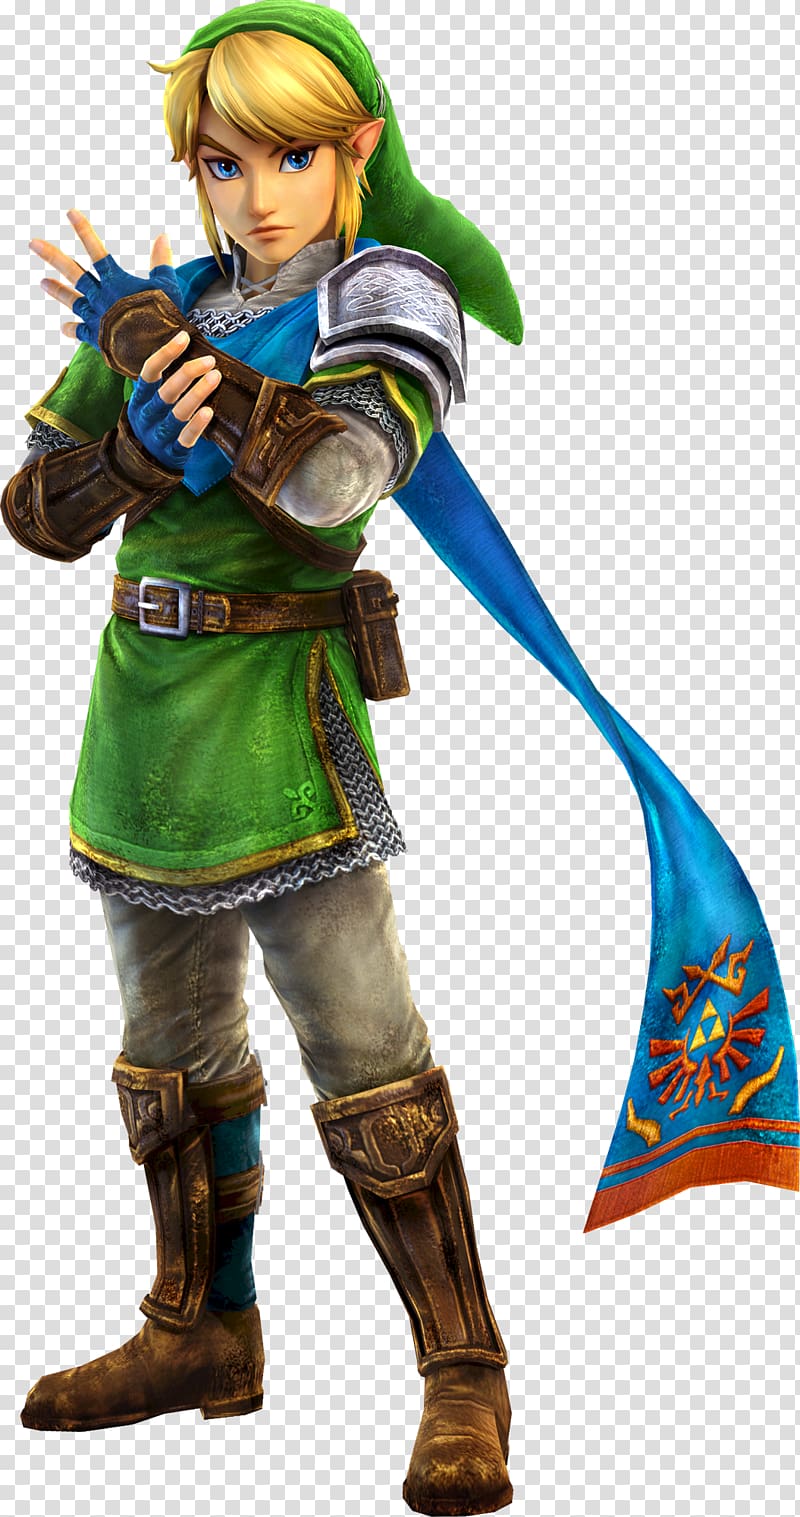 The Legend of Zelda Link illustration, Hyrule Warriors Universe of The Legend of Zelda Link Princess Zelda, warrior transparent background PNG clipart